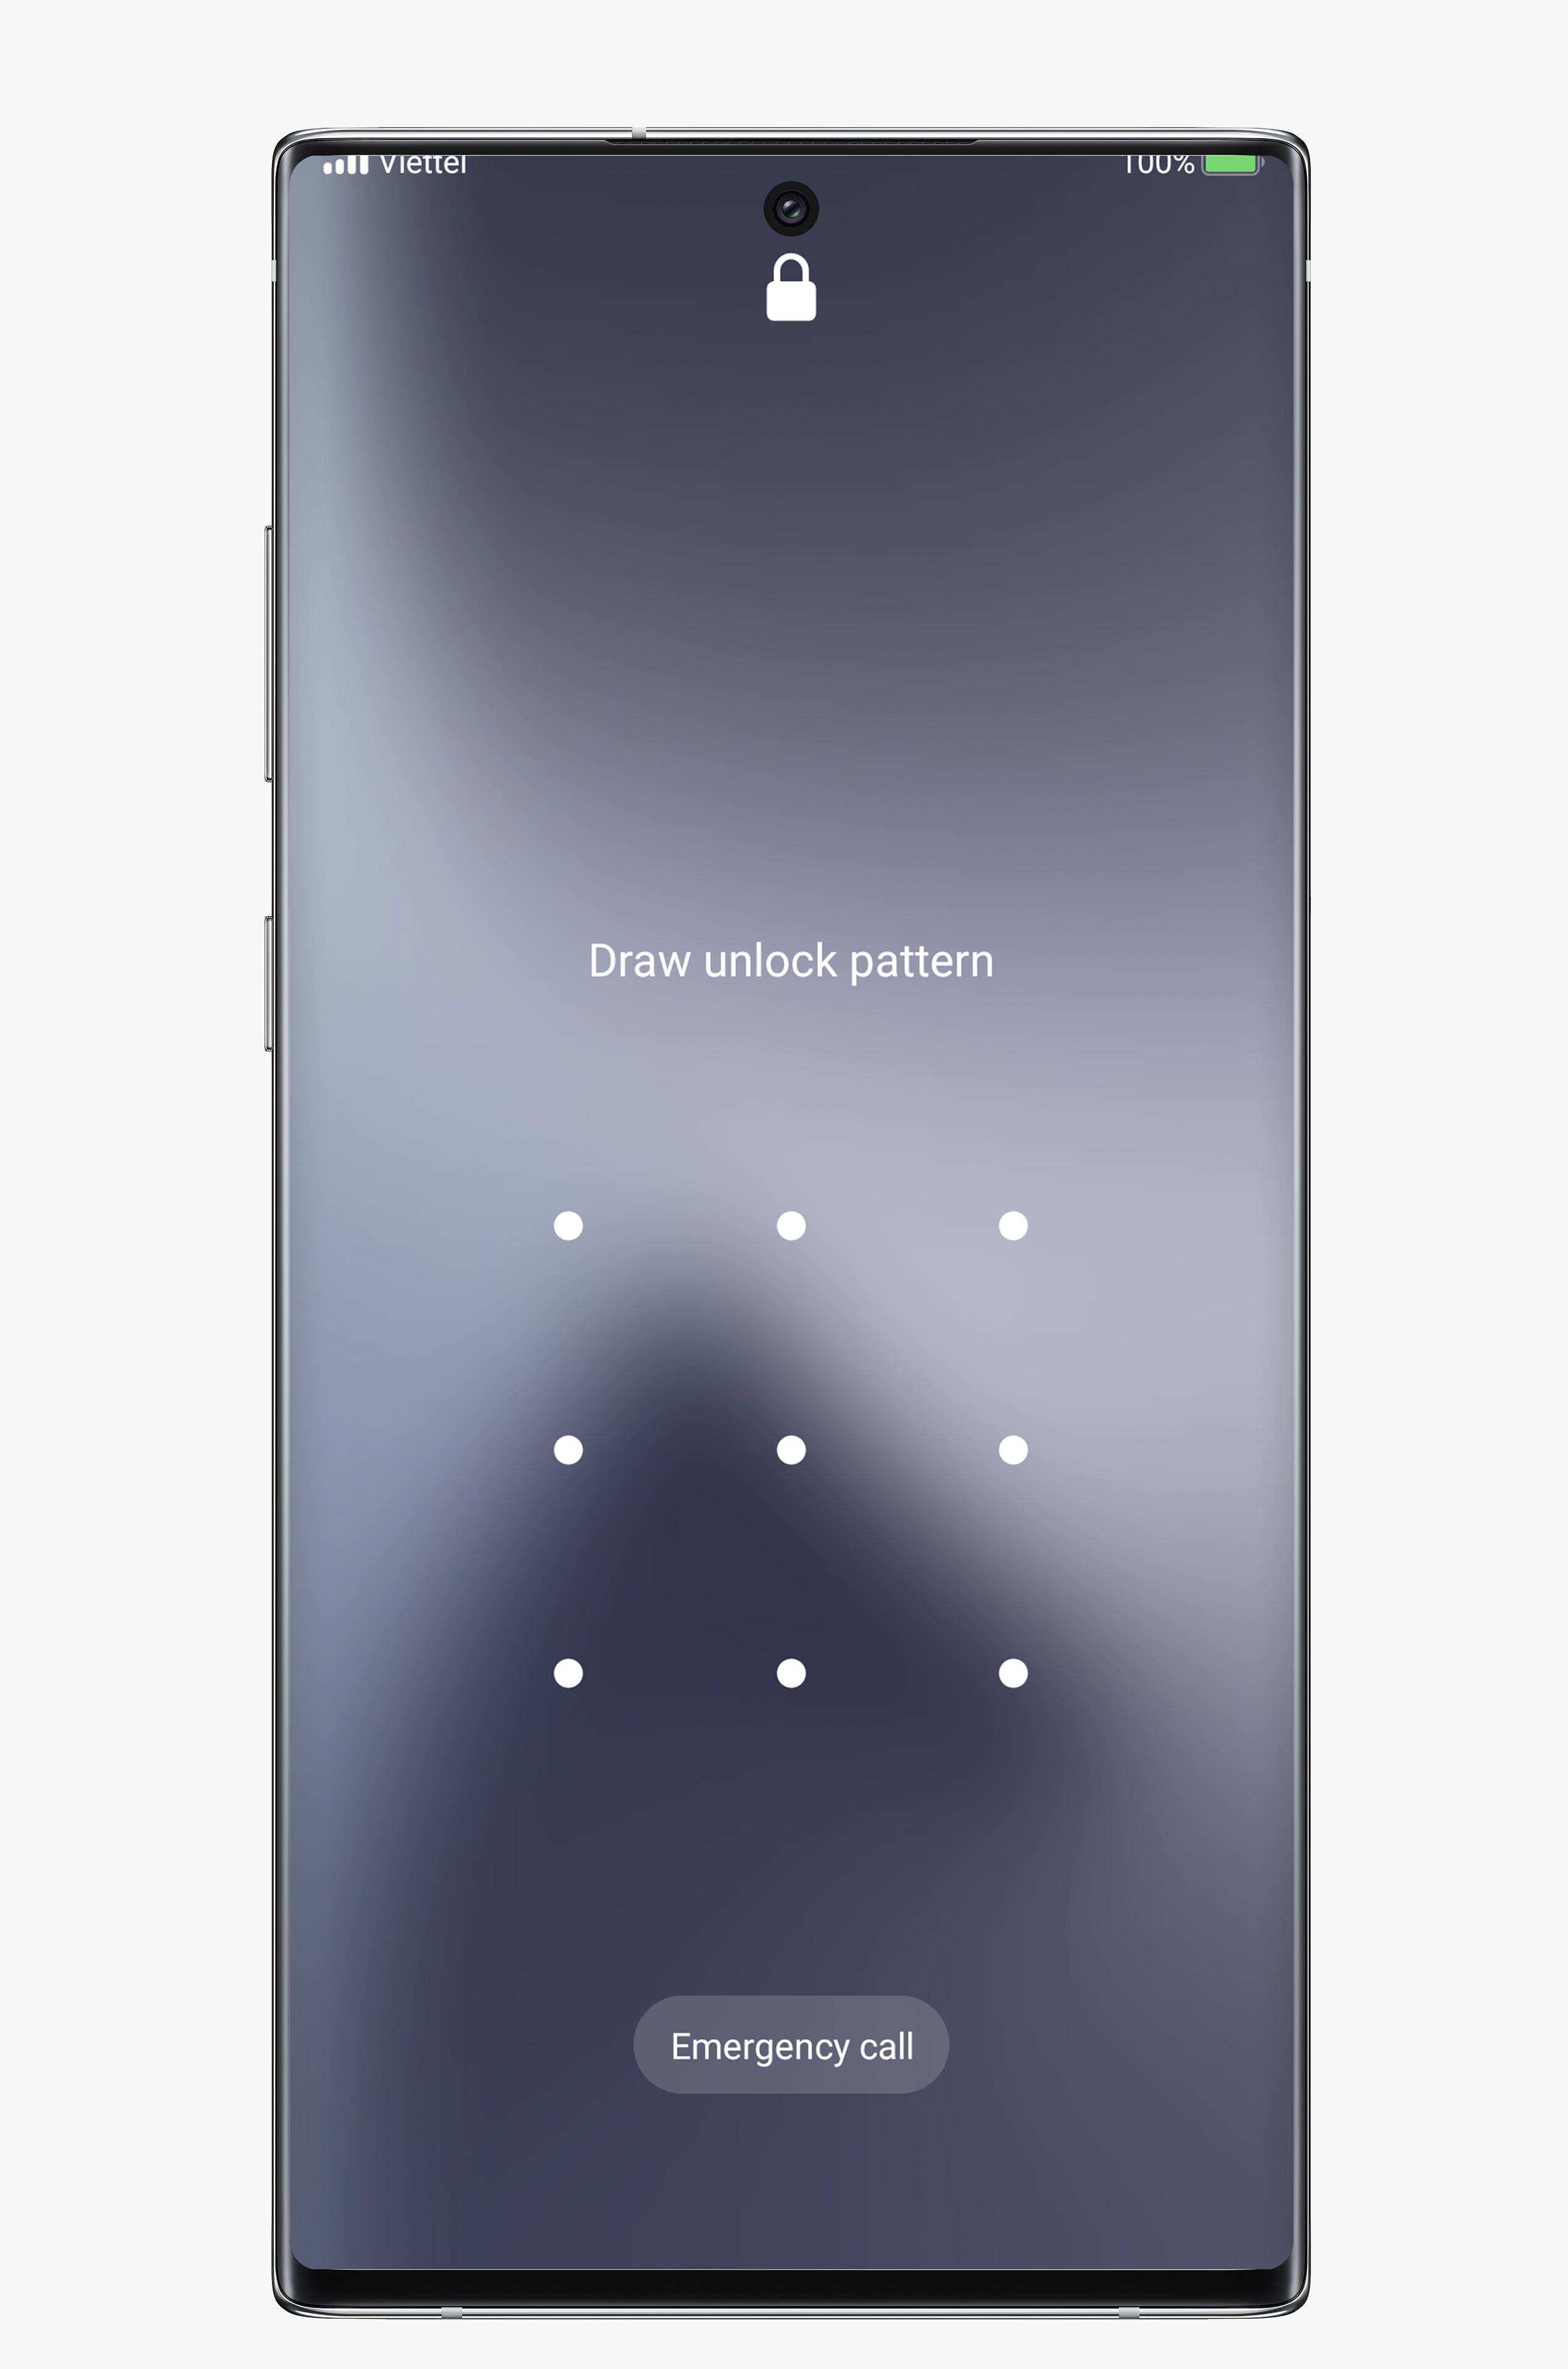 Ứng dụng khóa màn hình Galaxy S22: Bạn đang tìm kiếm một ứng dụng khóa màn hình thú vị và đẹp mắt cho Samsung Galaxy S22 của mình? Hãy xem hình ảnh liên quan để tìm kiếm tác phẩm ưng ý nhất và có thể sử dụng ngay lập tức trên thiết bị của bạn!